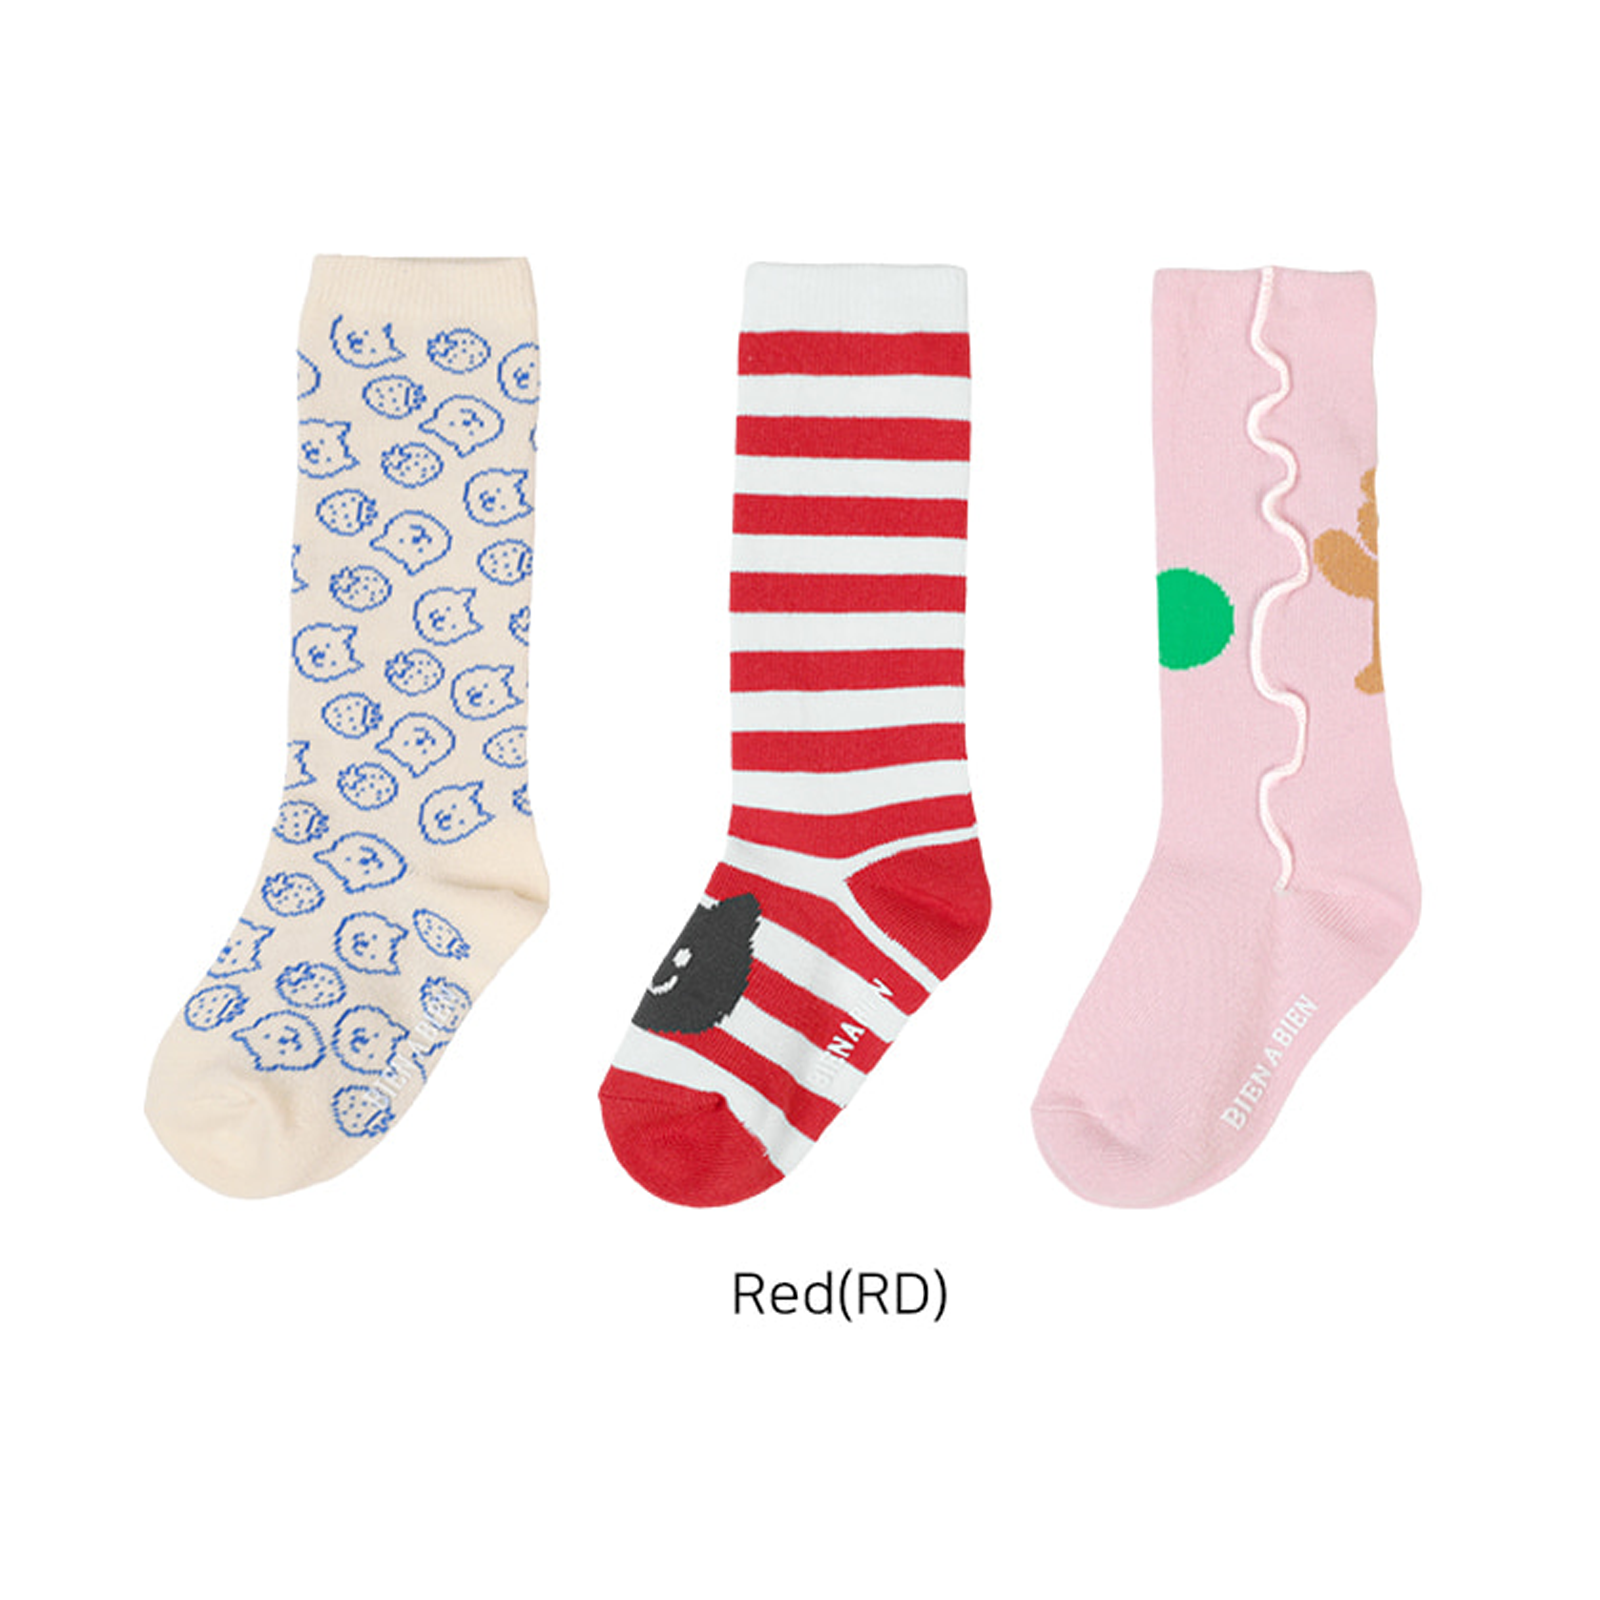 Bien a Bien Children's Socks Set - Red